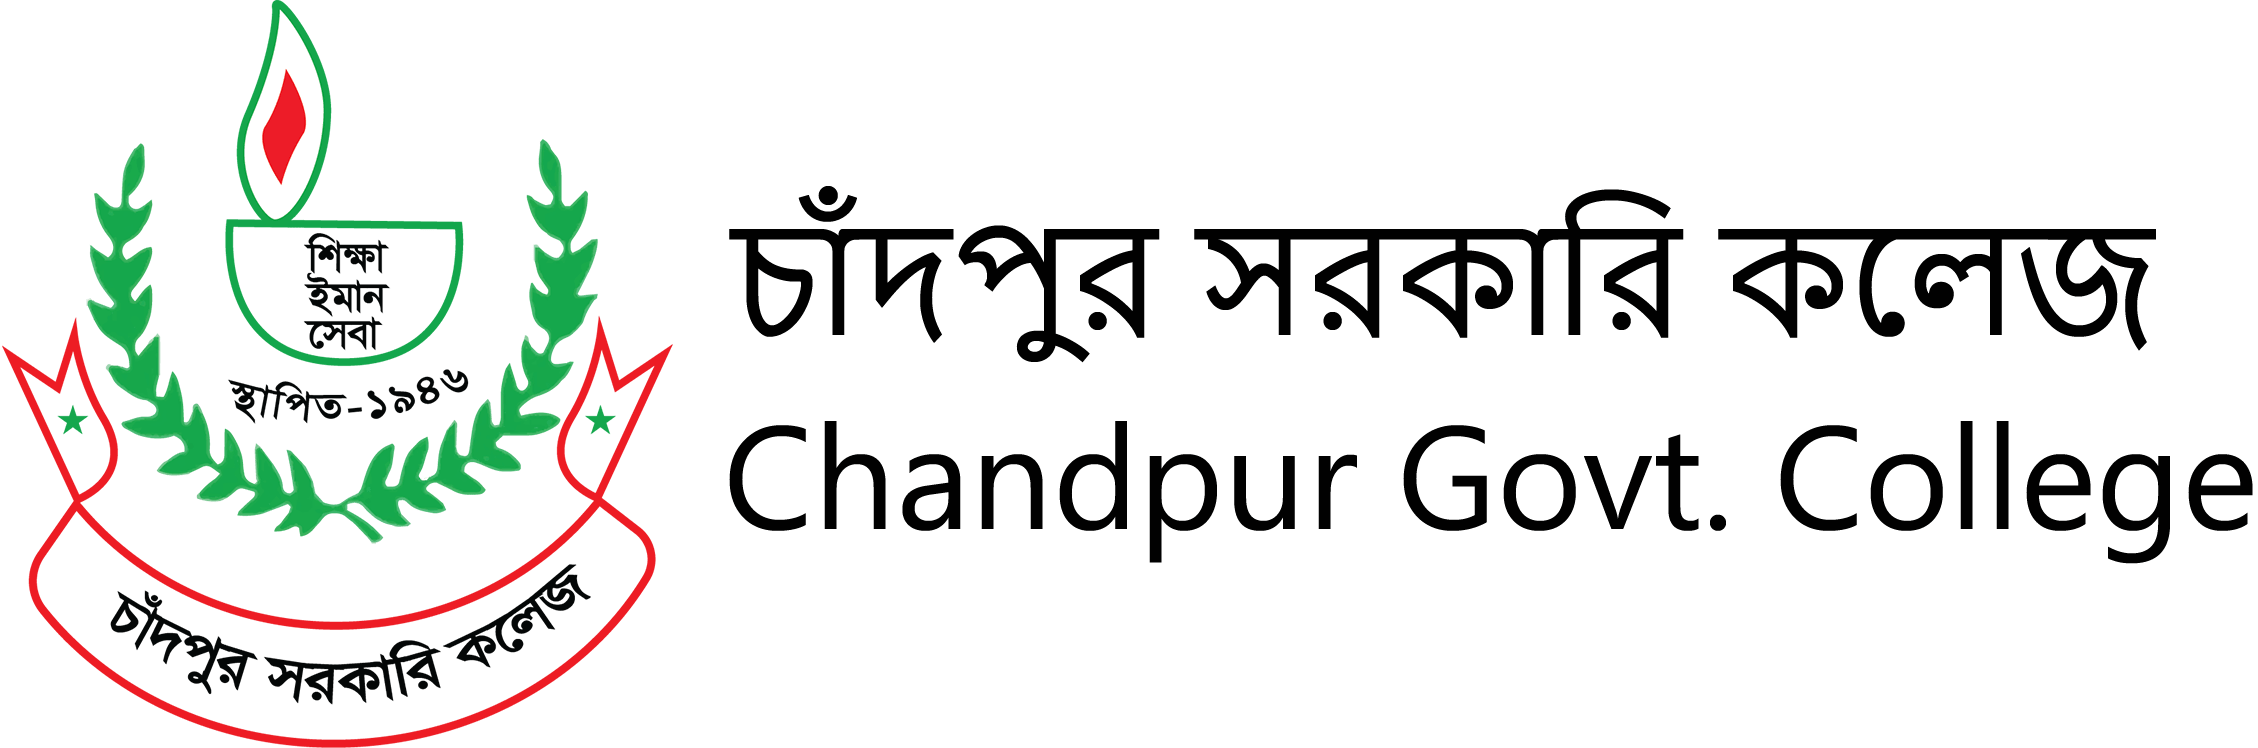 Chandpur Govt. College Logo